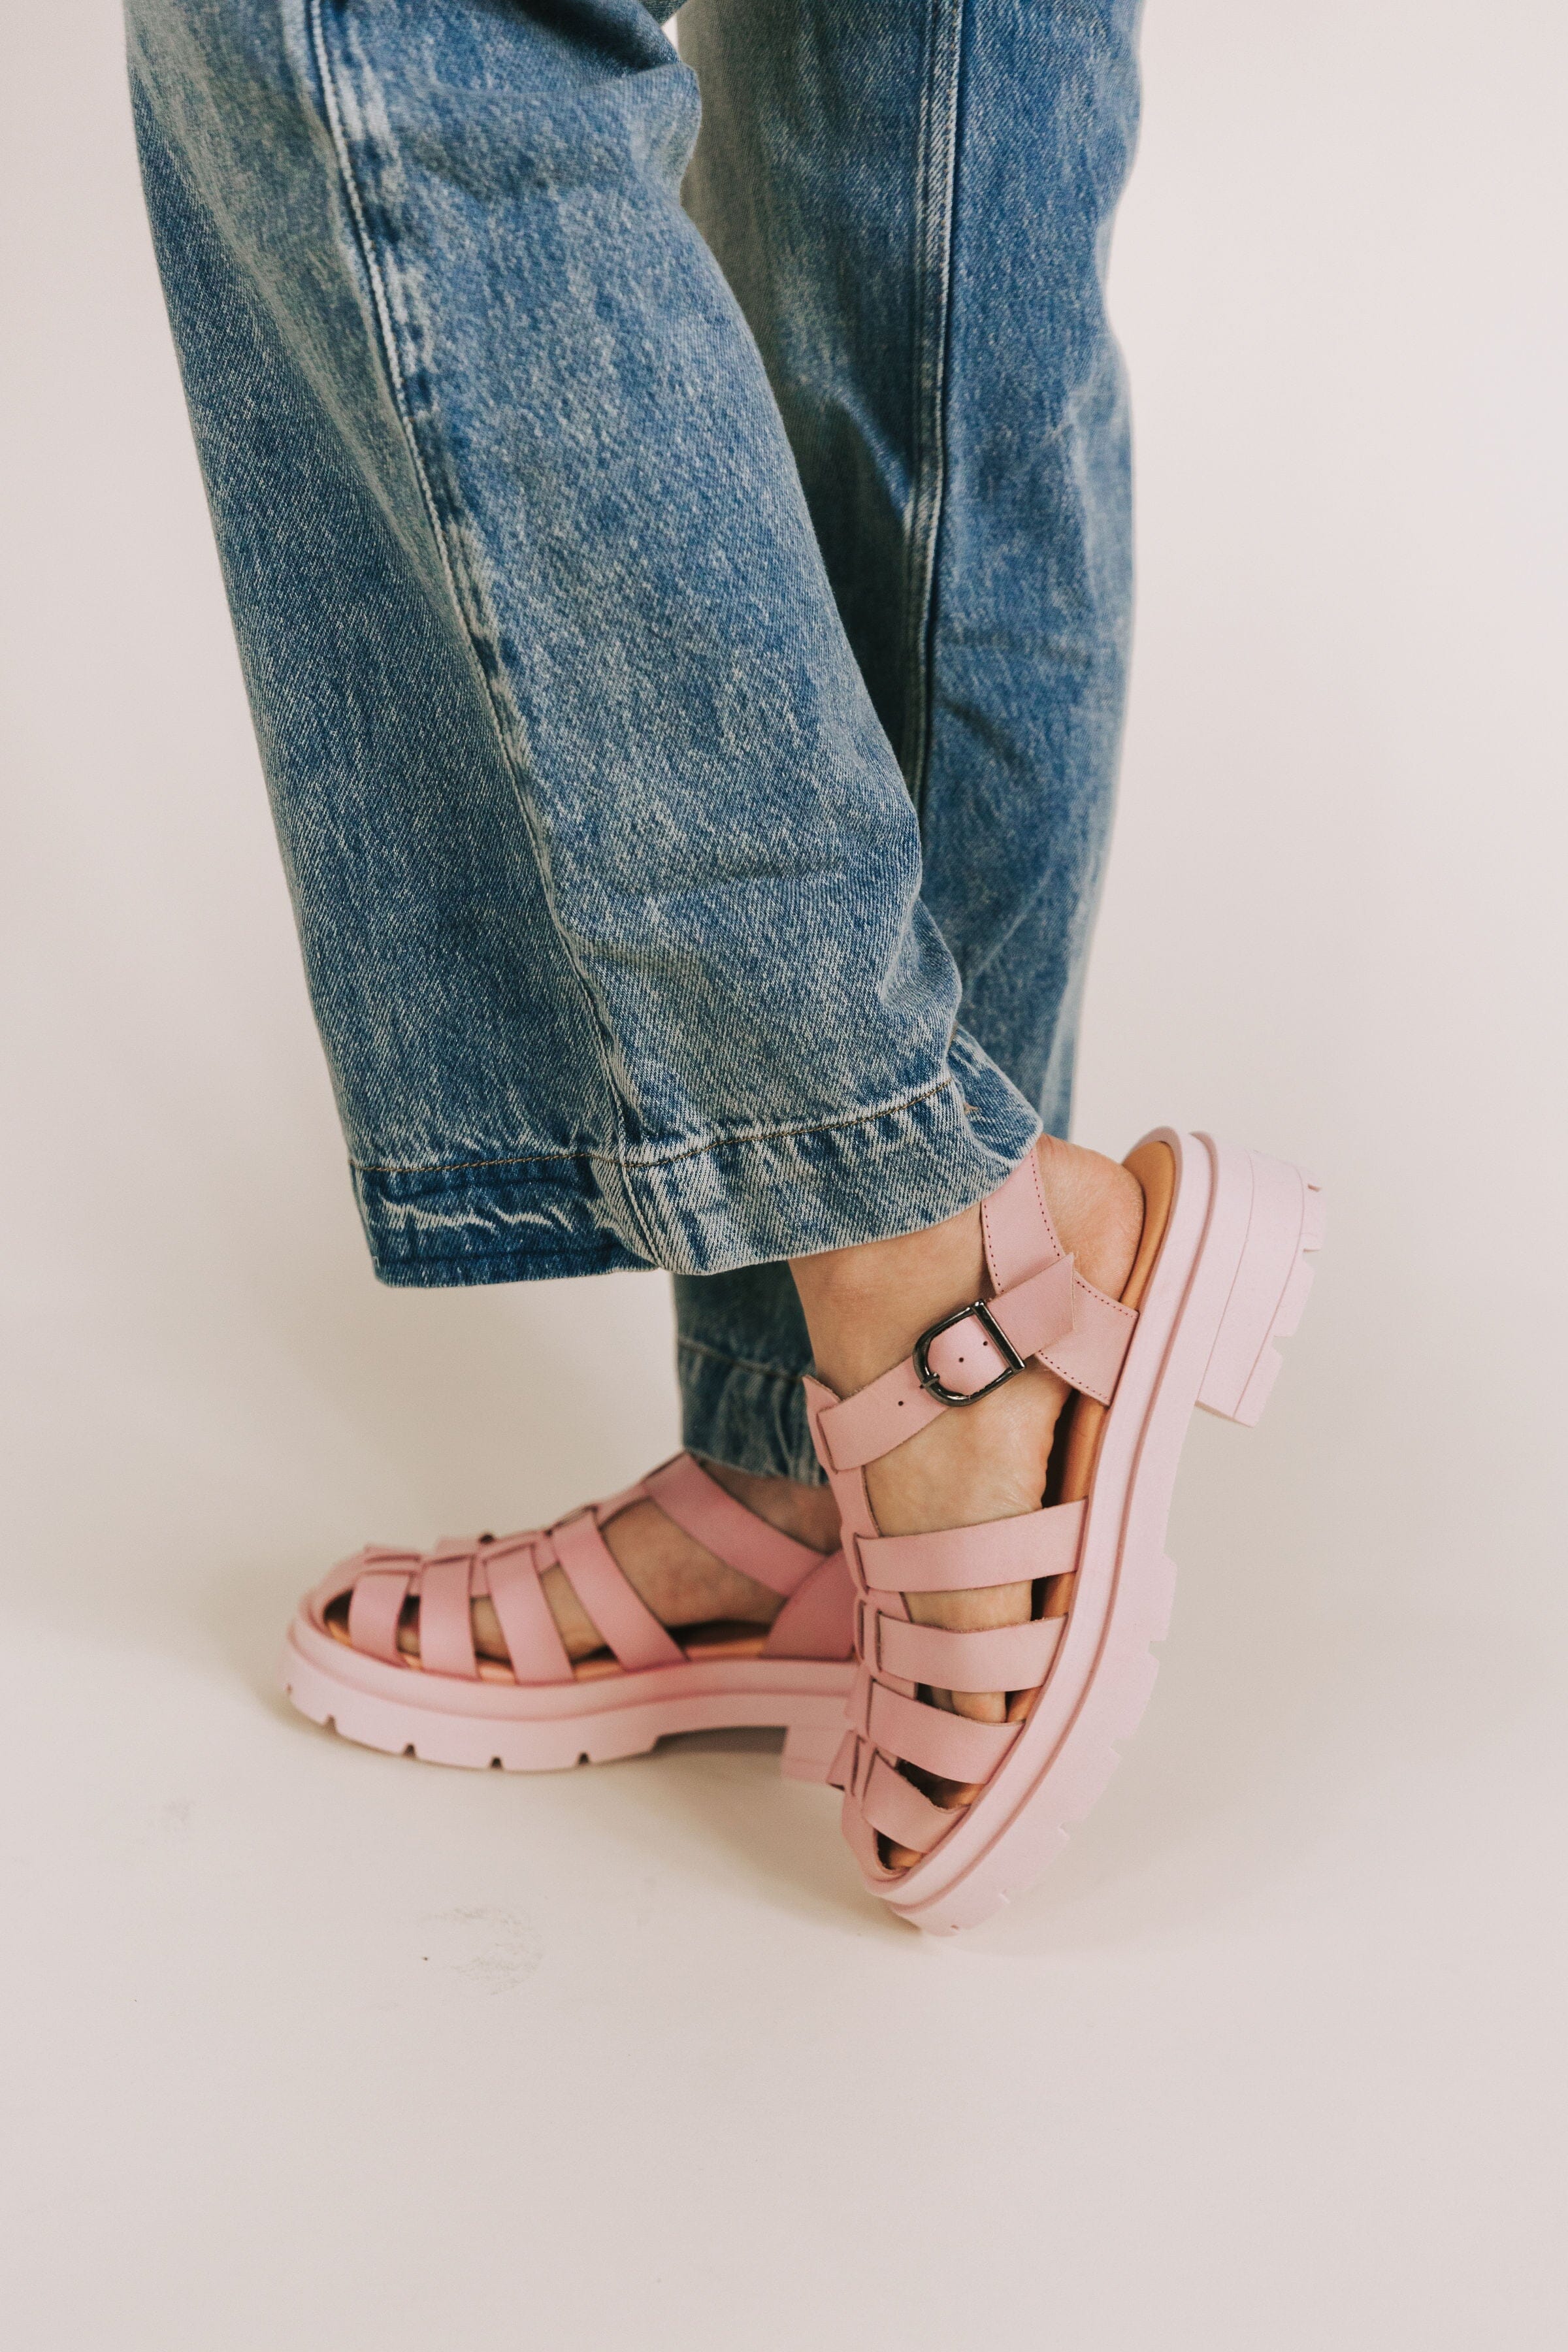 12 Cutest Summer Sandals - Cheap Sandals